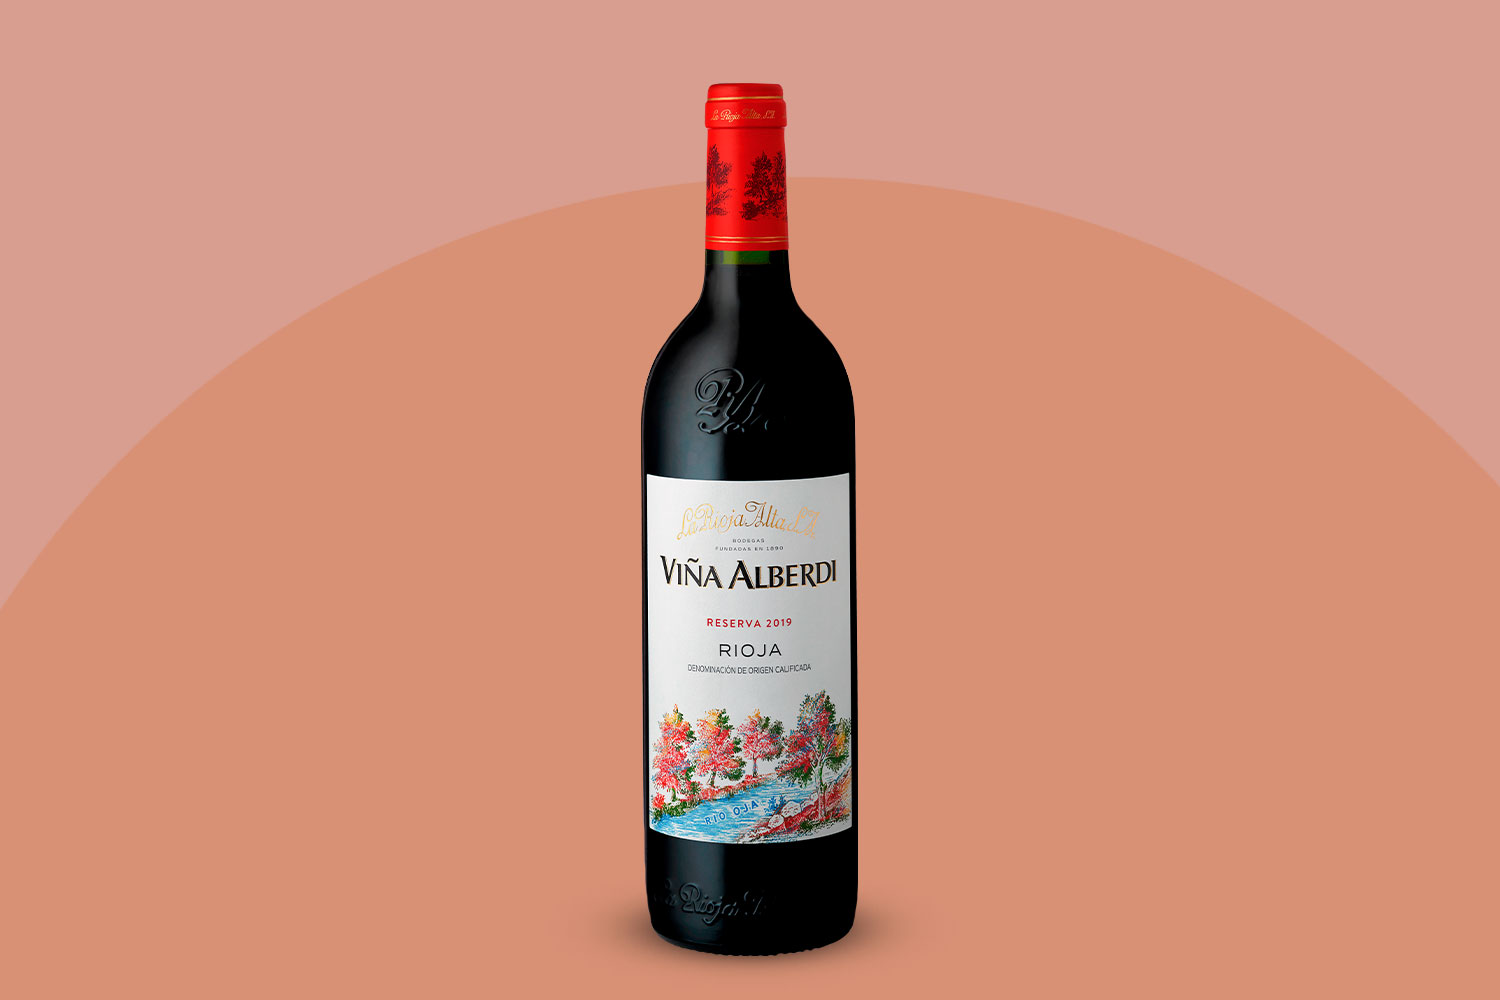 La Rioja Alta Viña Alberdi 2019